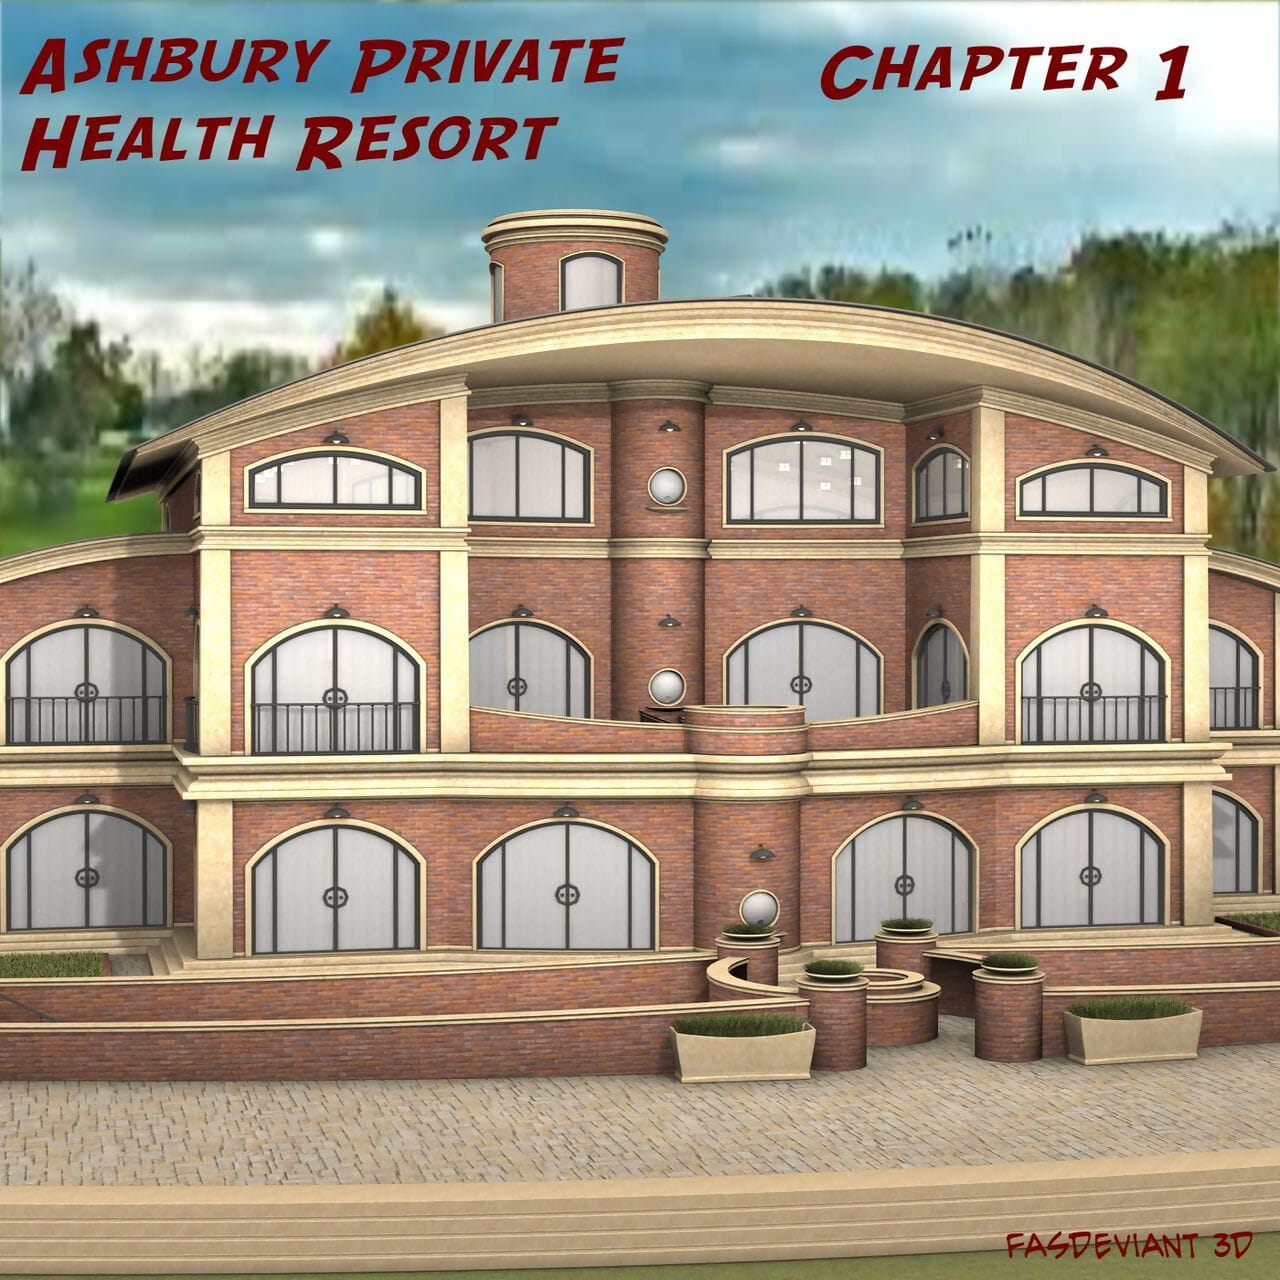 desviado ashbury Privado salud resort capítulo 1 page 1